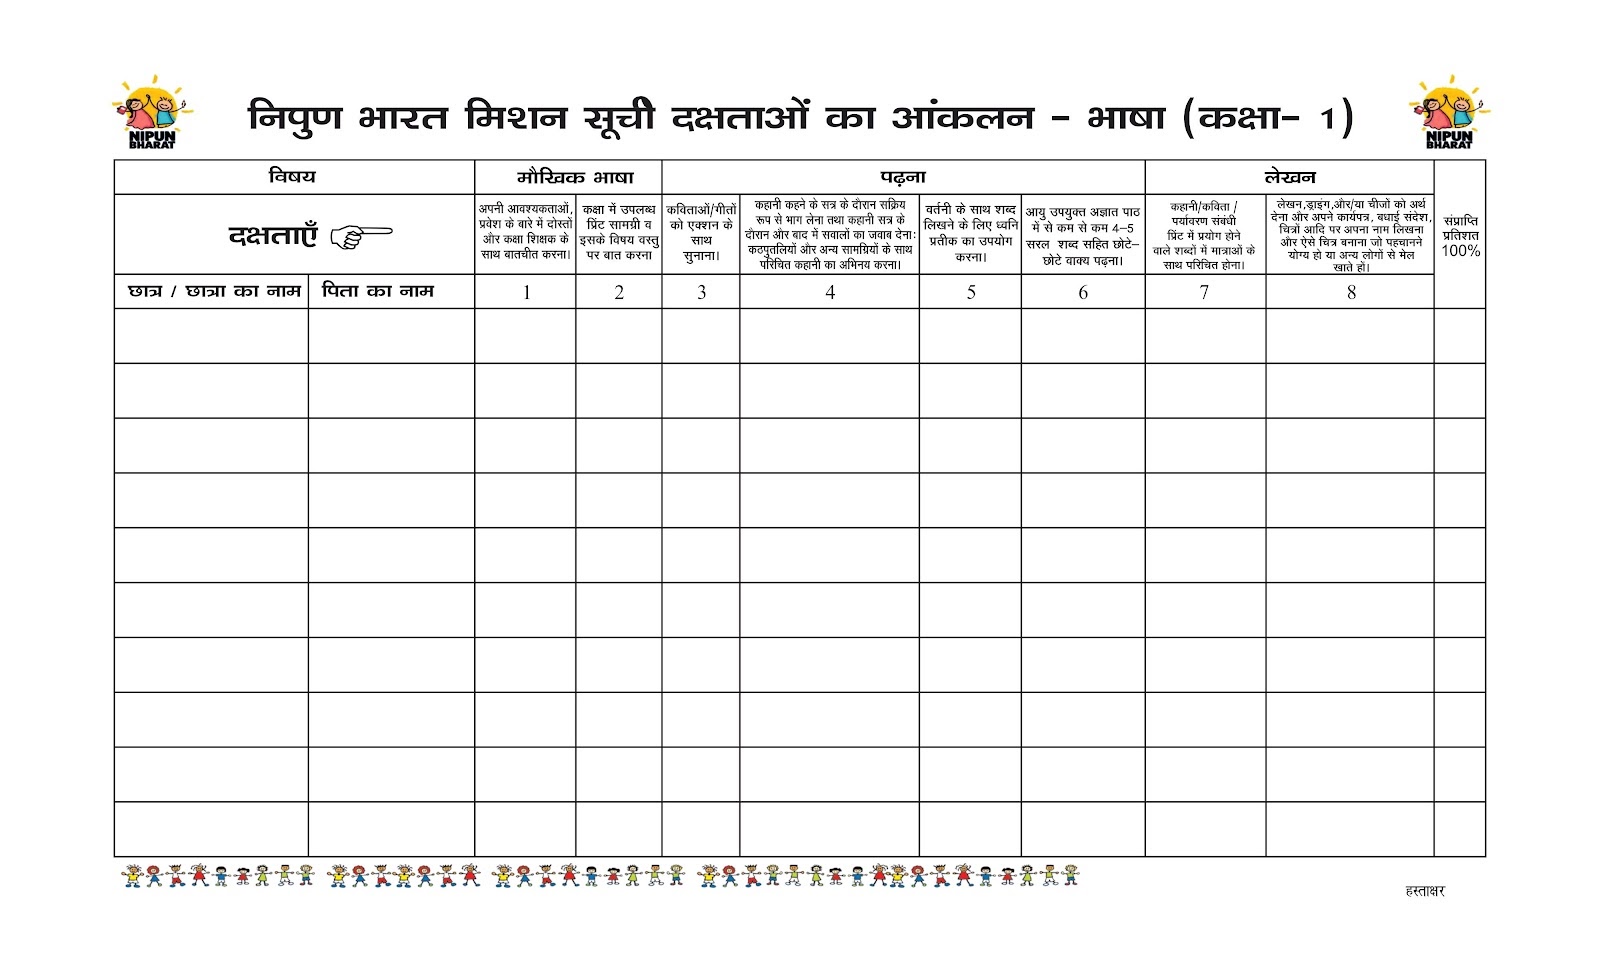 निपुण भारत मिशन सूची दक्षताओं का आंकलन प्रपत्र कक्षा 1 से 8 तक - 2024